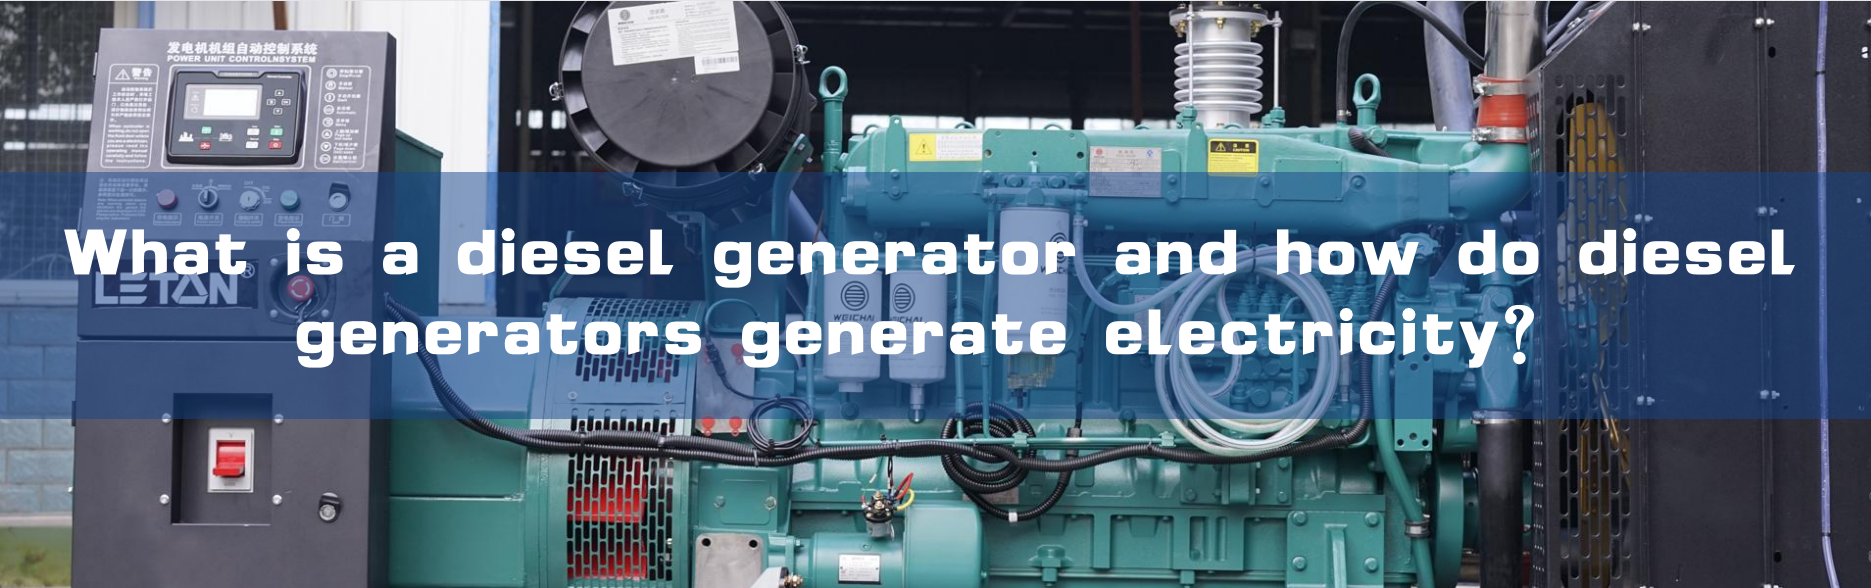 Què és un generador dièsel i com generen electricitat els generadors dièsel?